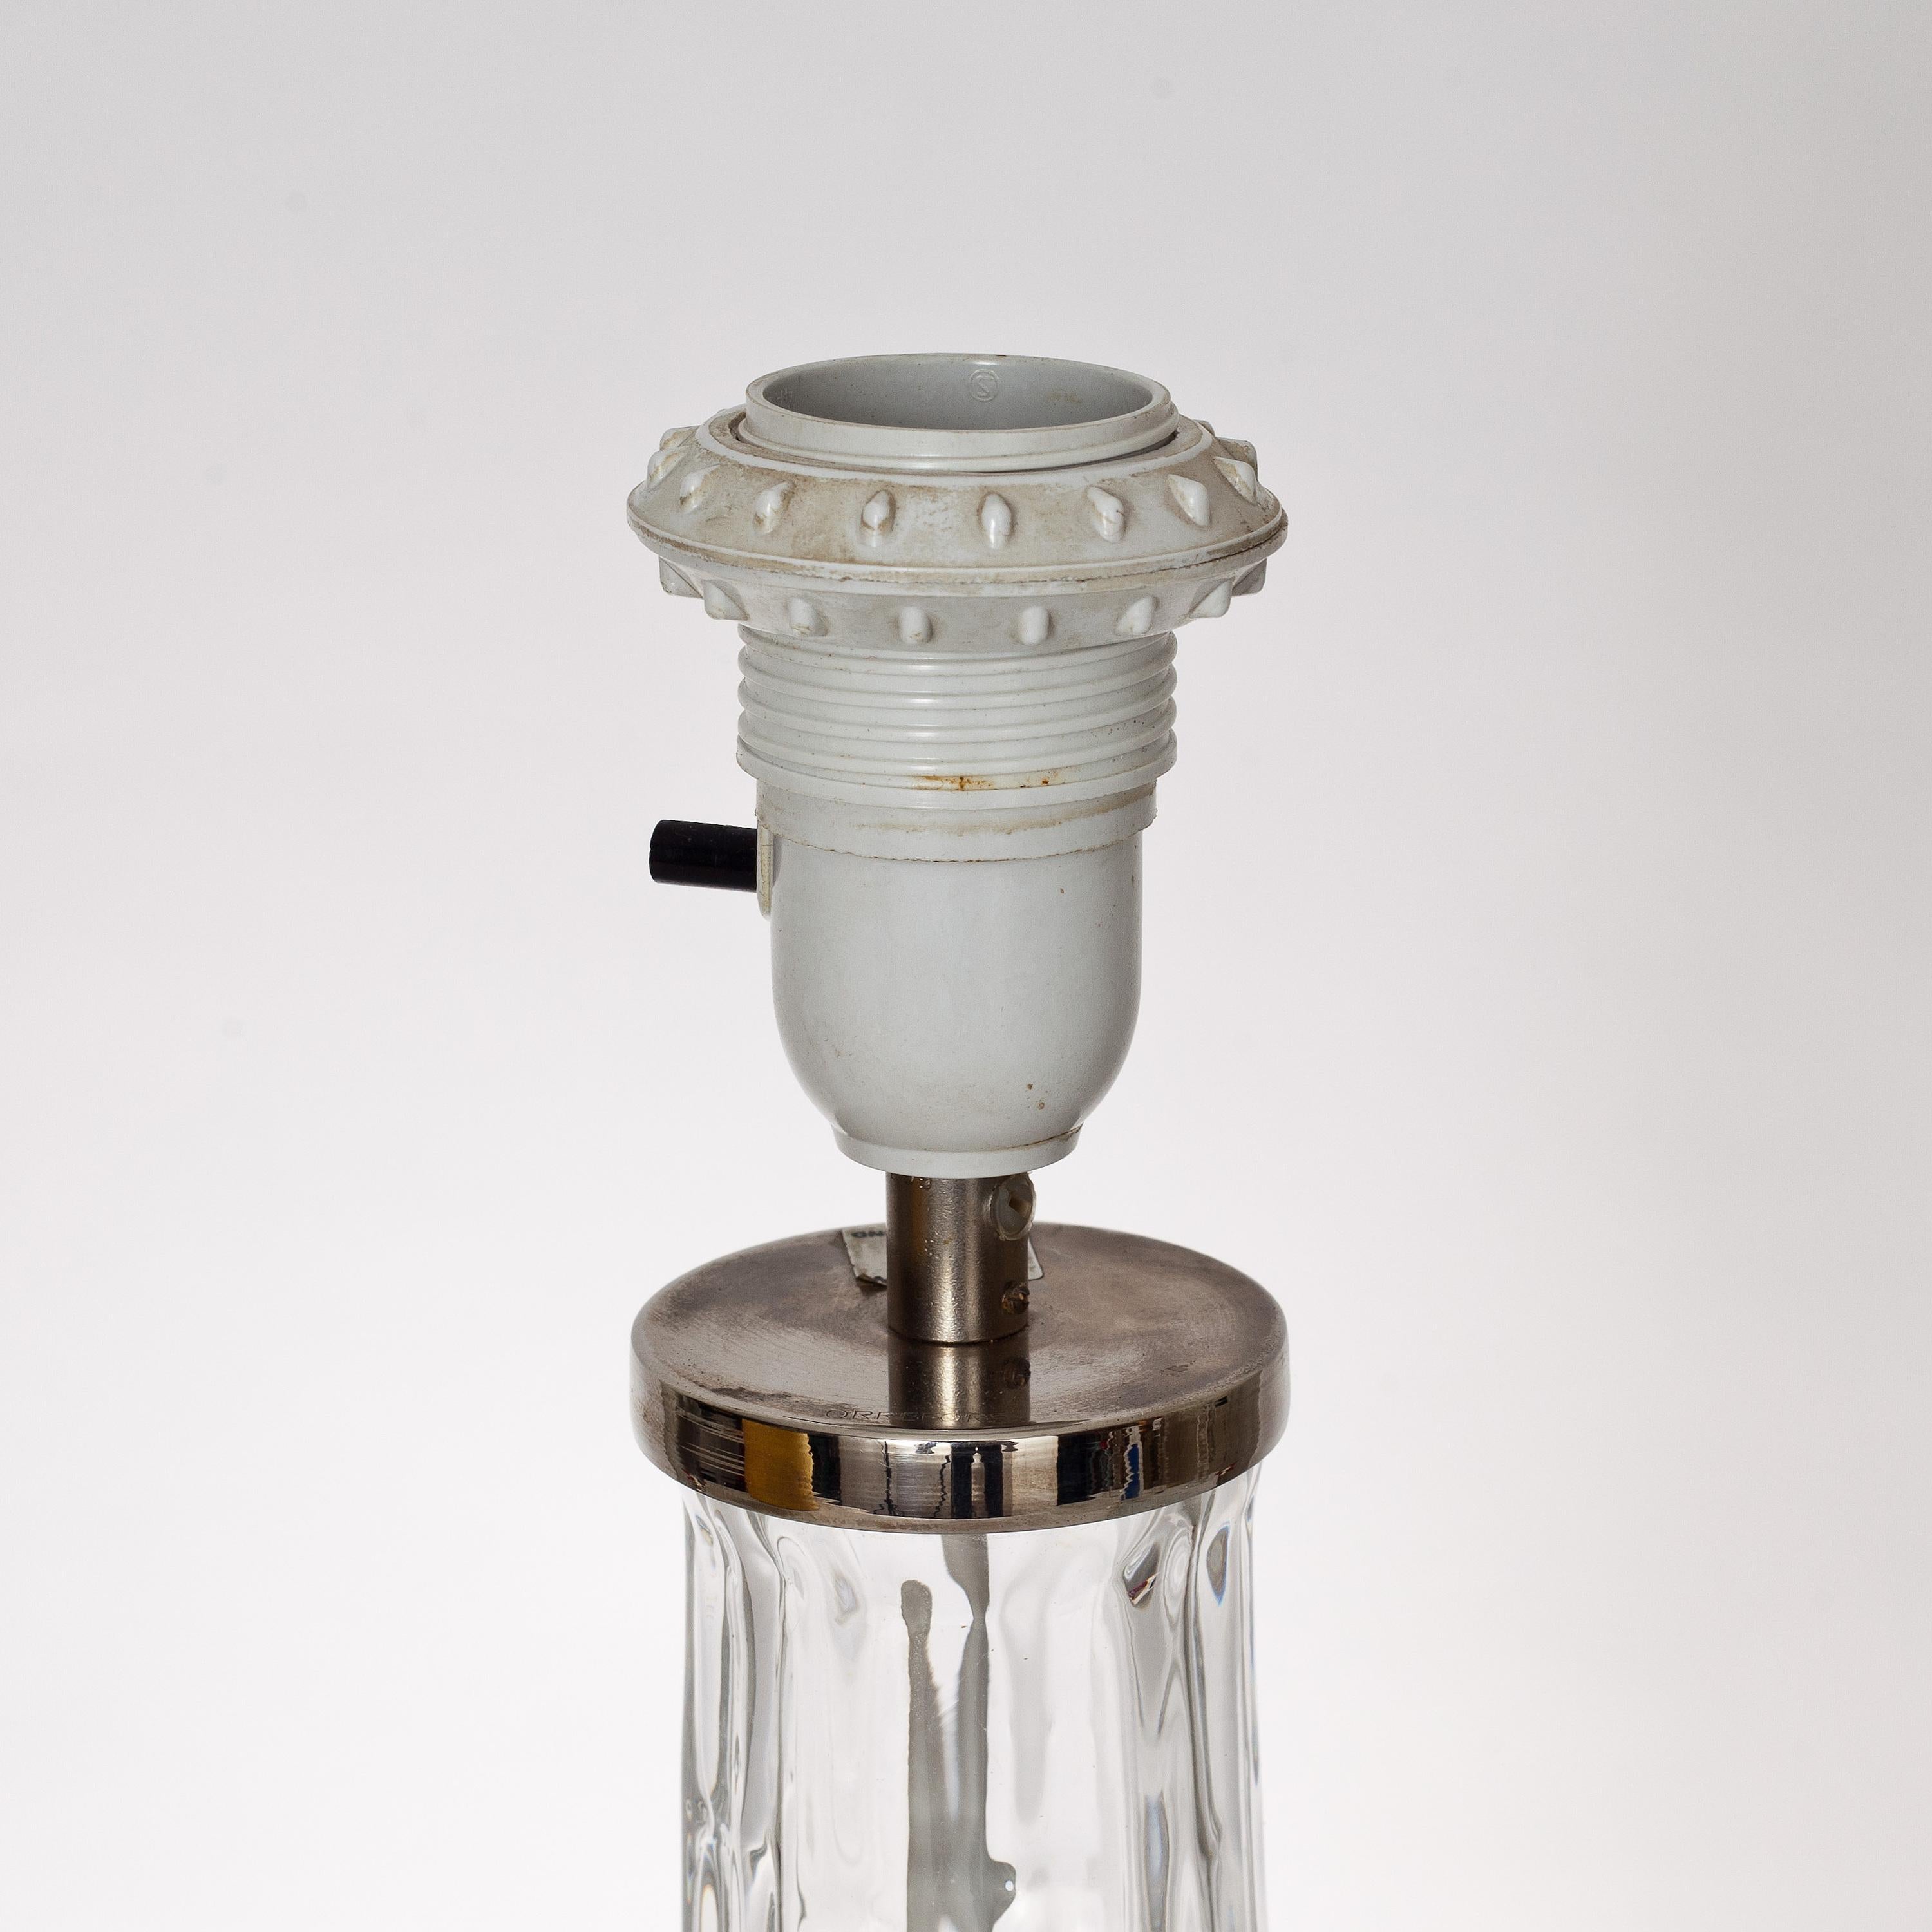 LAMPE DE TABLE conçue par Carl Fagerlund pour Orrefors. Milieu du 20e siècle.
Base de lampe en verre. Hauteur 38 y compris la base de la lampe. Avec une hauteur d'abat-jour de 66.
Électrification en bon état non testée